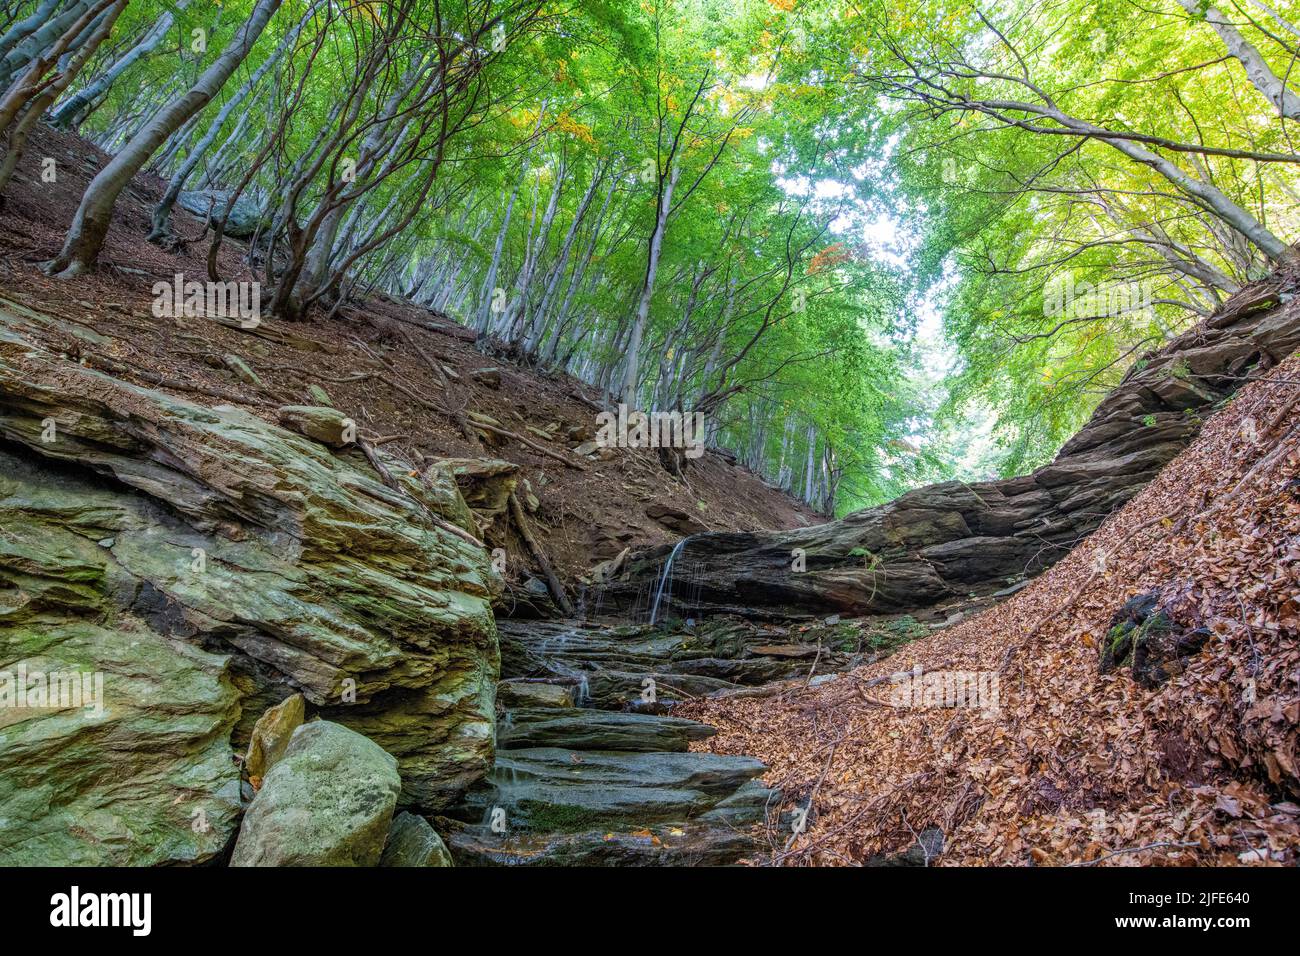 Un angolo basso delle rocce e una piccola cascata nel bosco di faggio, Piemonte, Italia Foto Stock